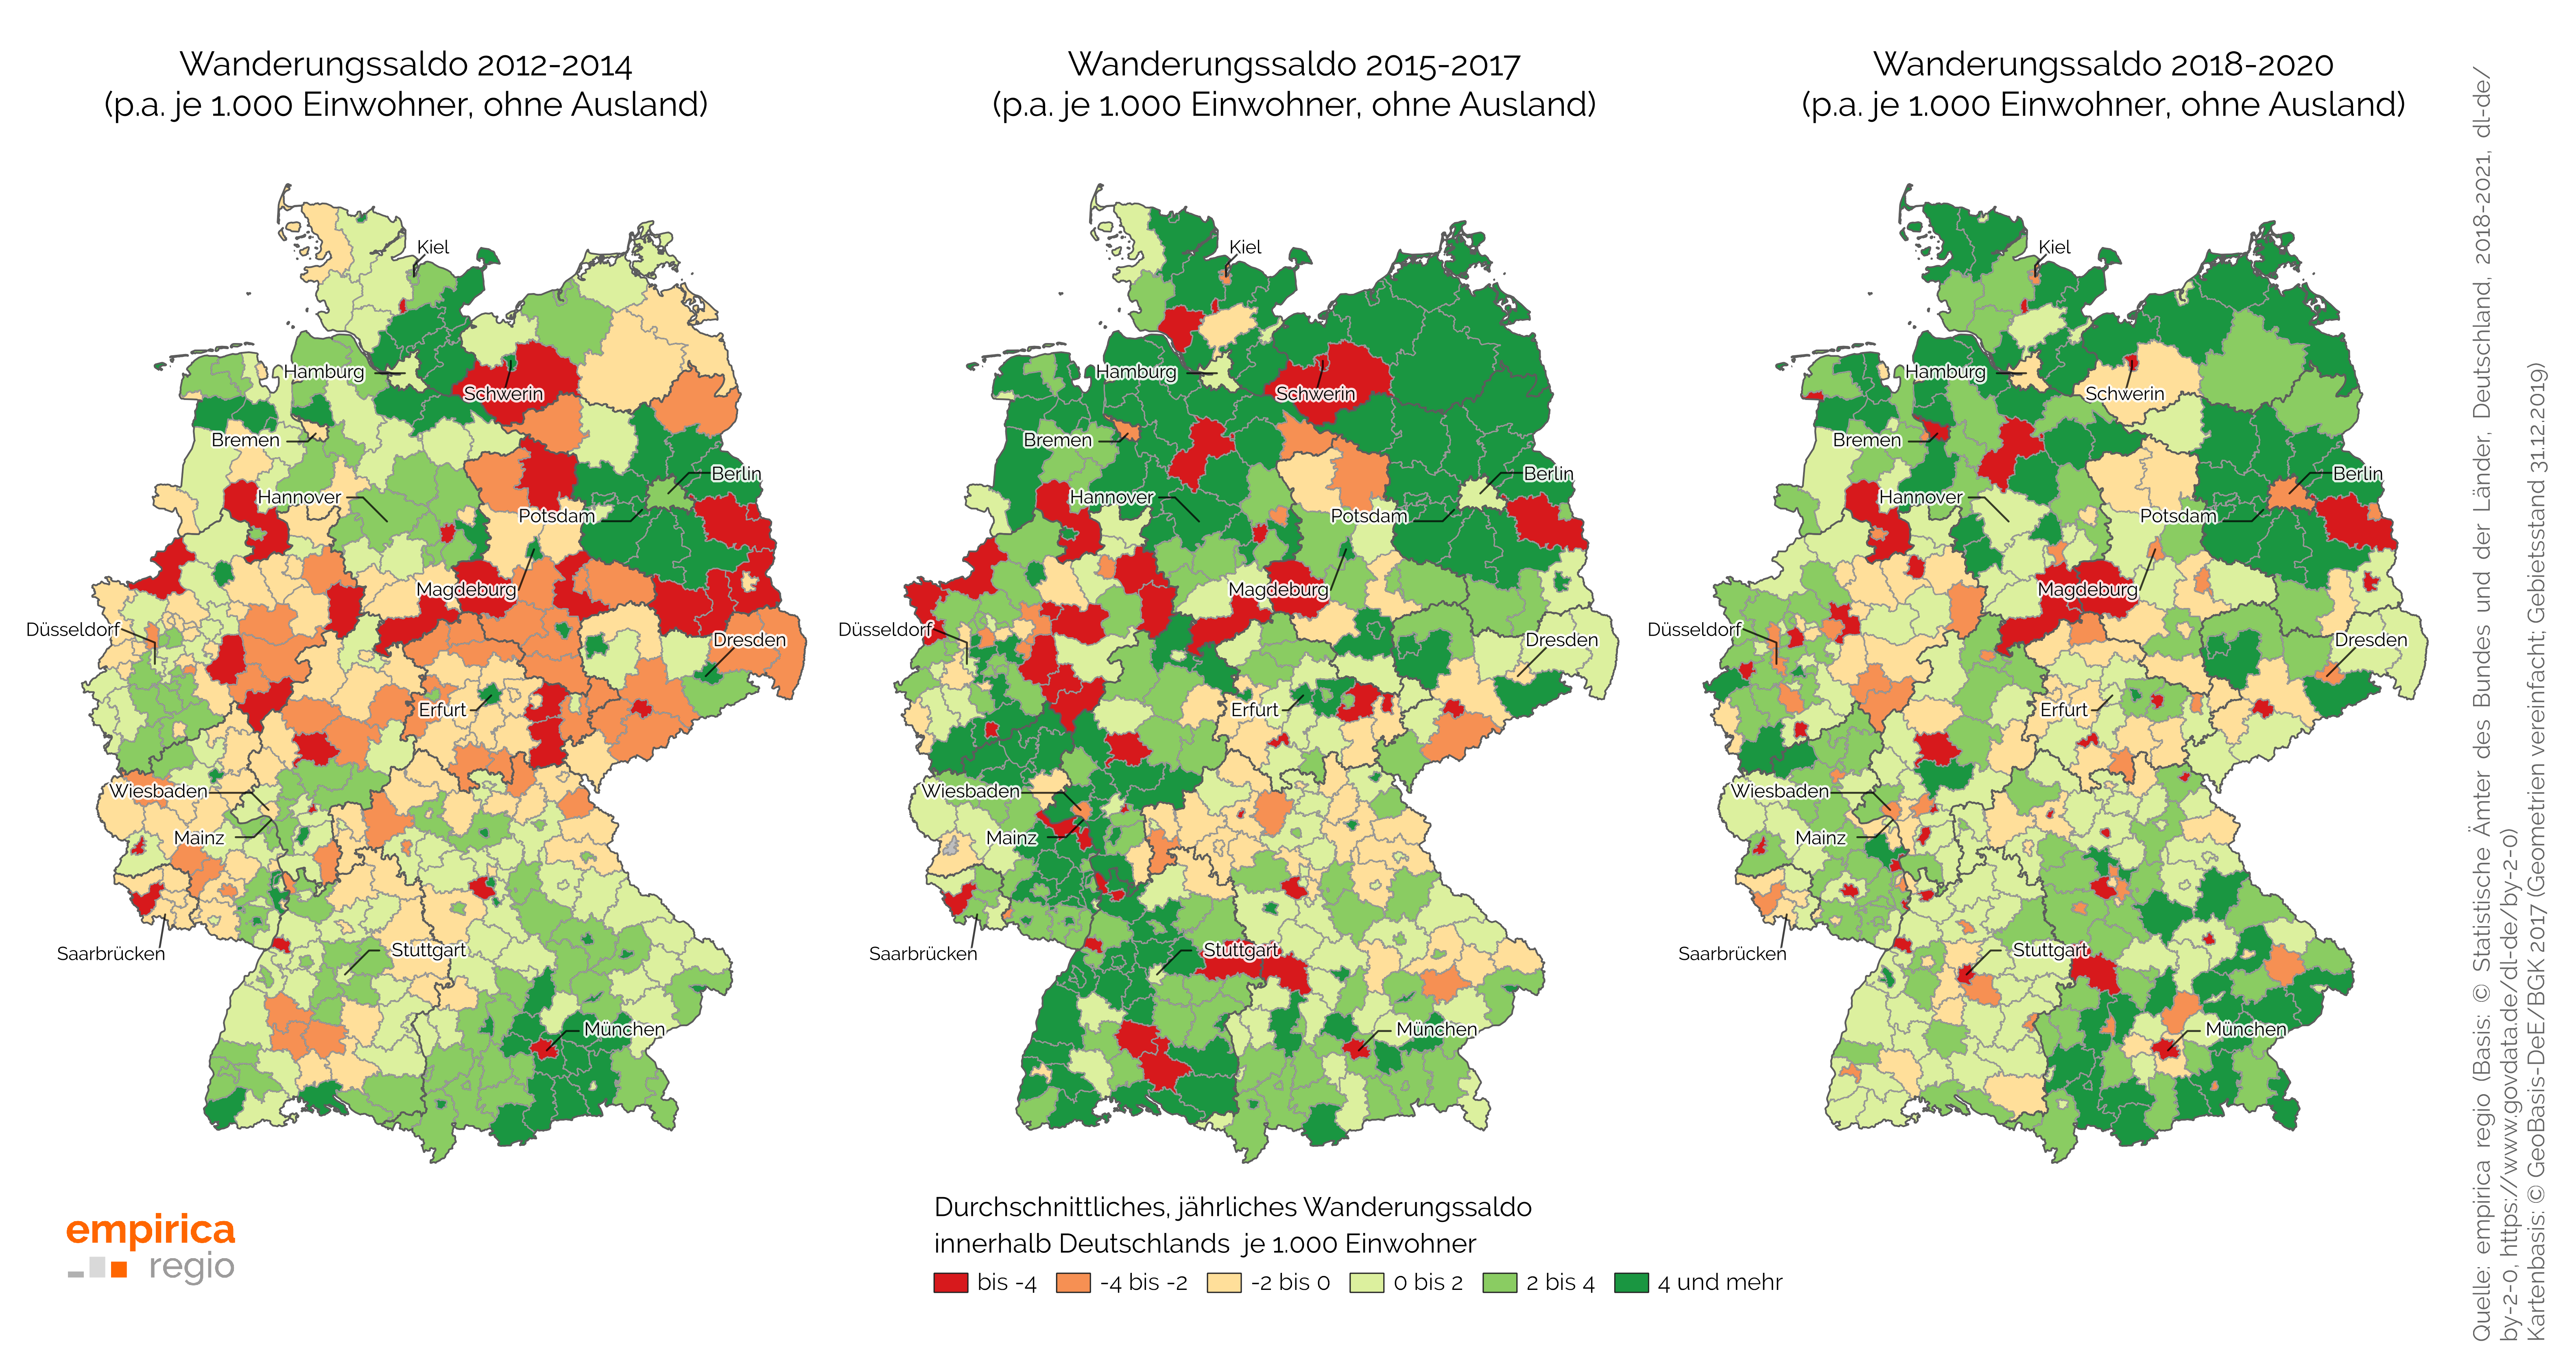 Durchschnittliches, jährliches Wanderungssaldo der Jahre 2012 bis 2020 innerhalb Deutschlands  je 1.000 Einwohner auf Ebene von Kreisen